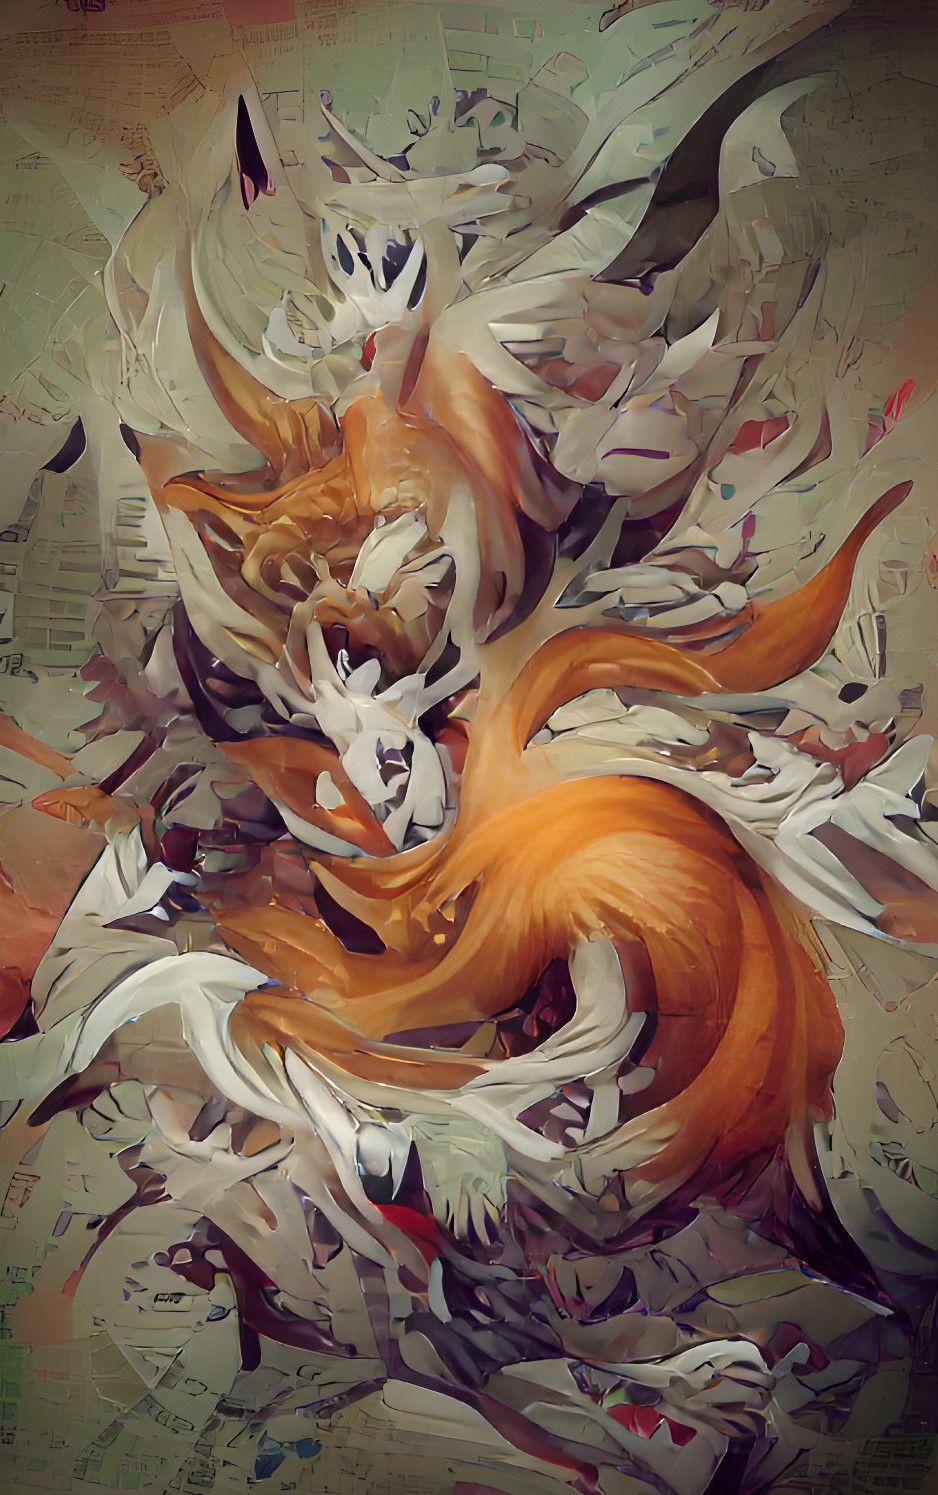 nine tailed fox